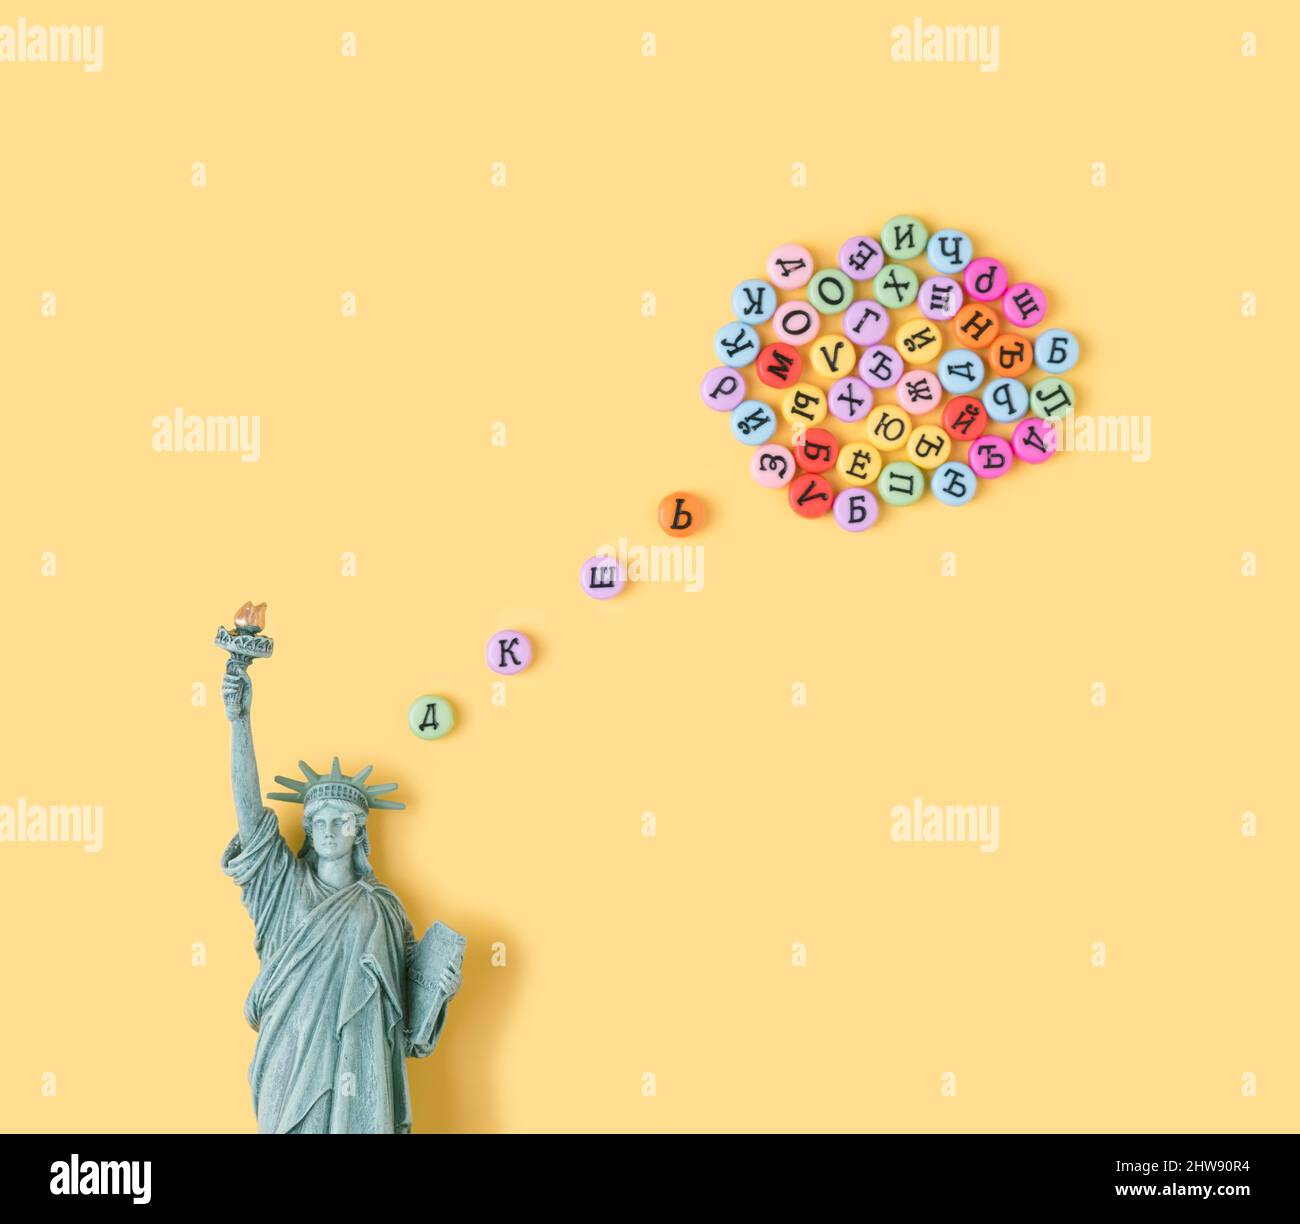 Estatua de la Libertad con burbuja de pensamiento hecha de letras cirílicas. EE.UU., Rusia política de fondo conceptual. Foto de stock